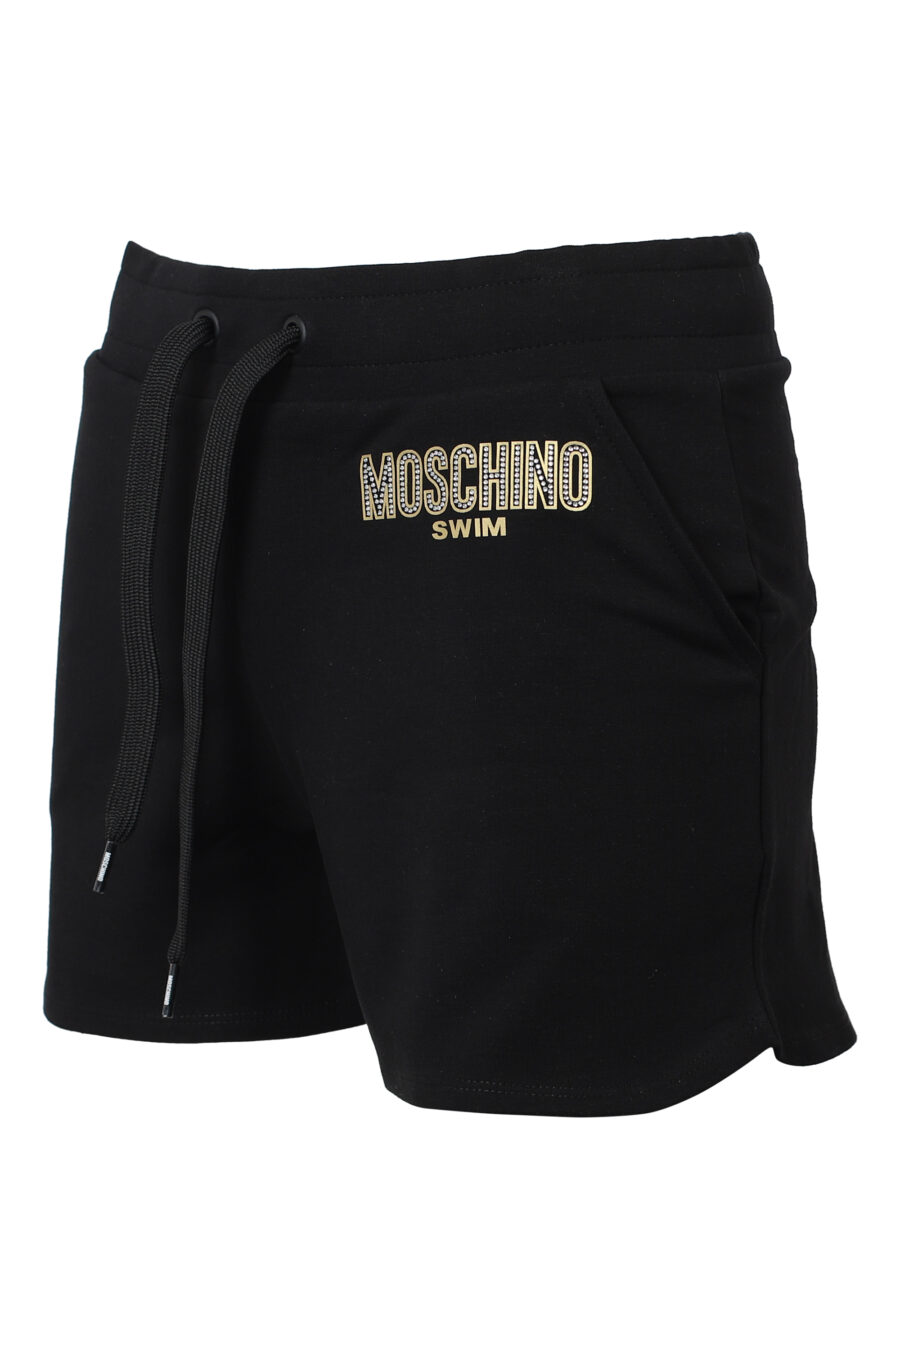 Black shorts with rhinestone logo - IMG 9845